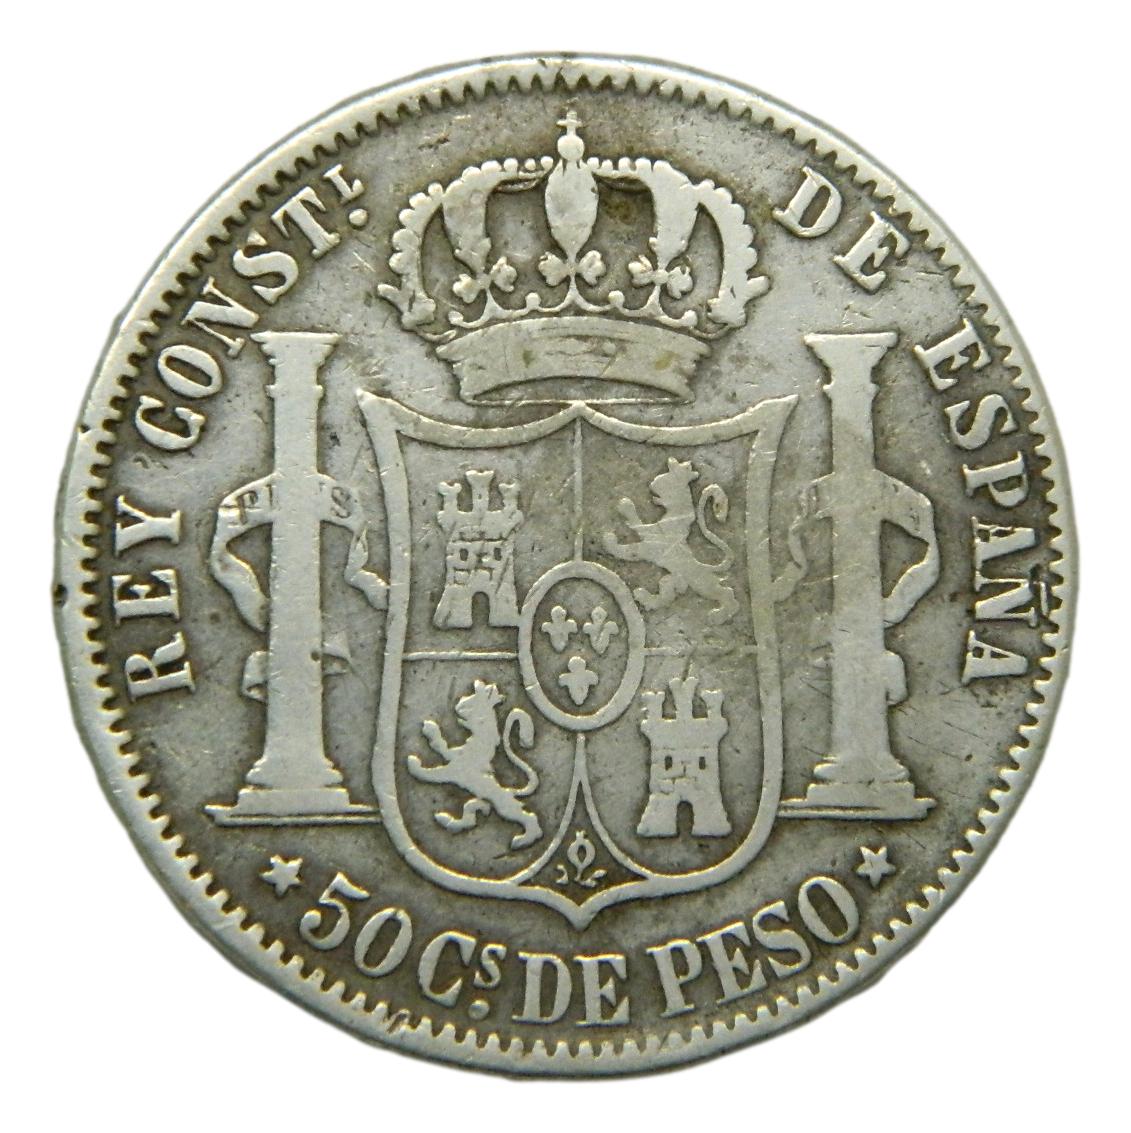 1881 - ALFONSO XII - 50 CENTAVOS DE PESO - MANILA